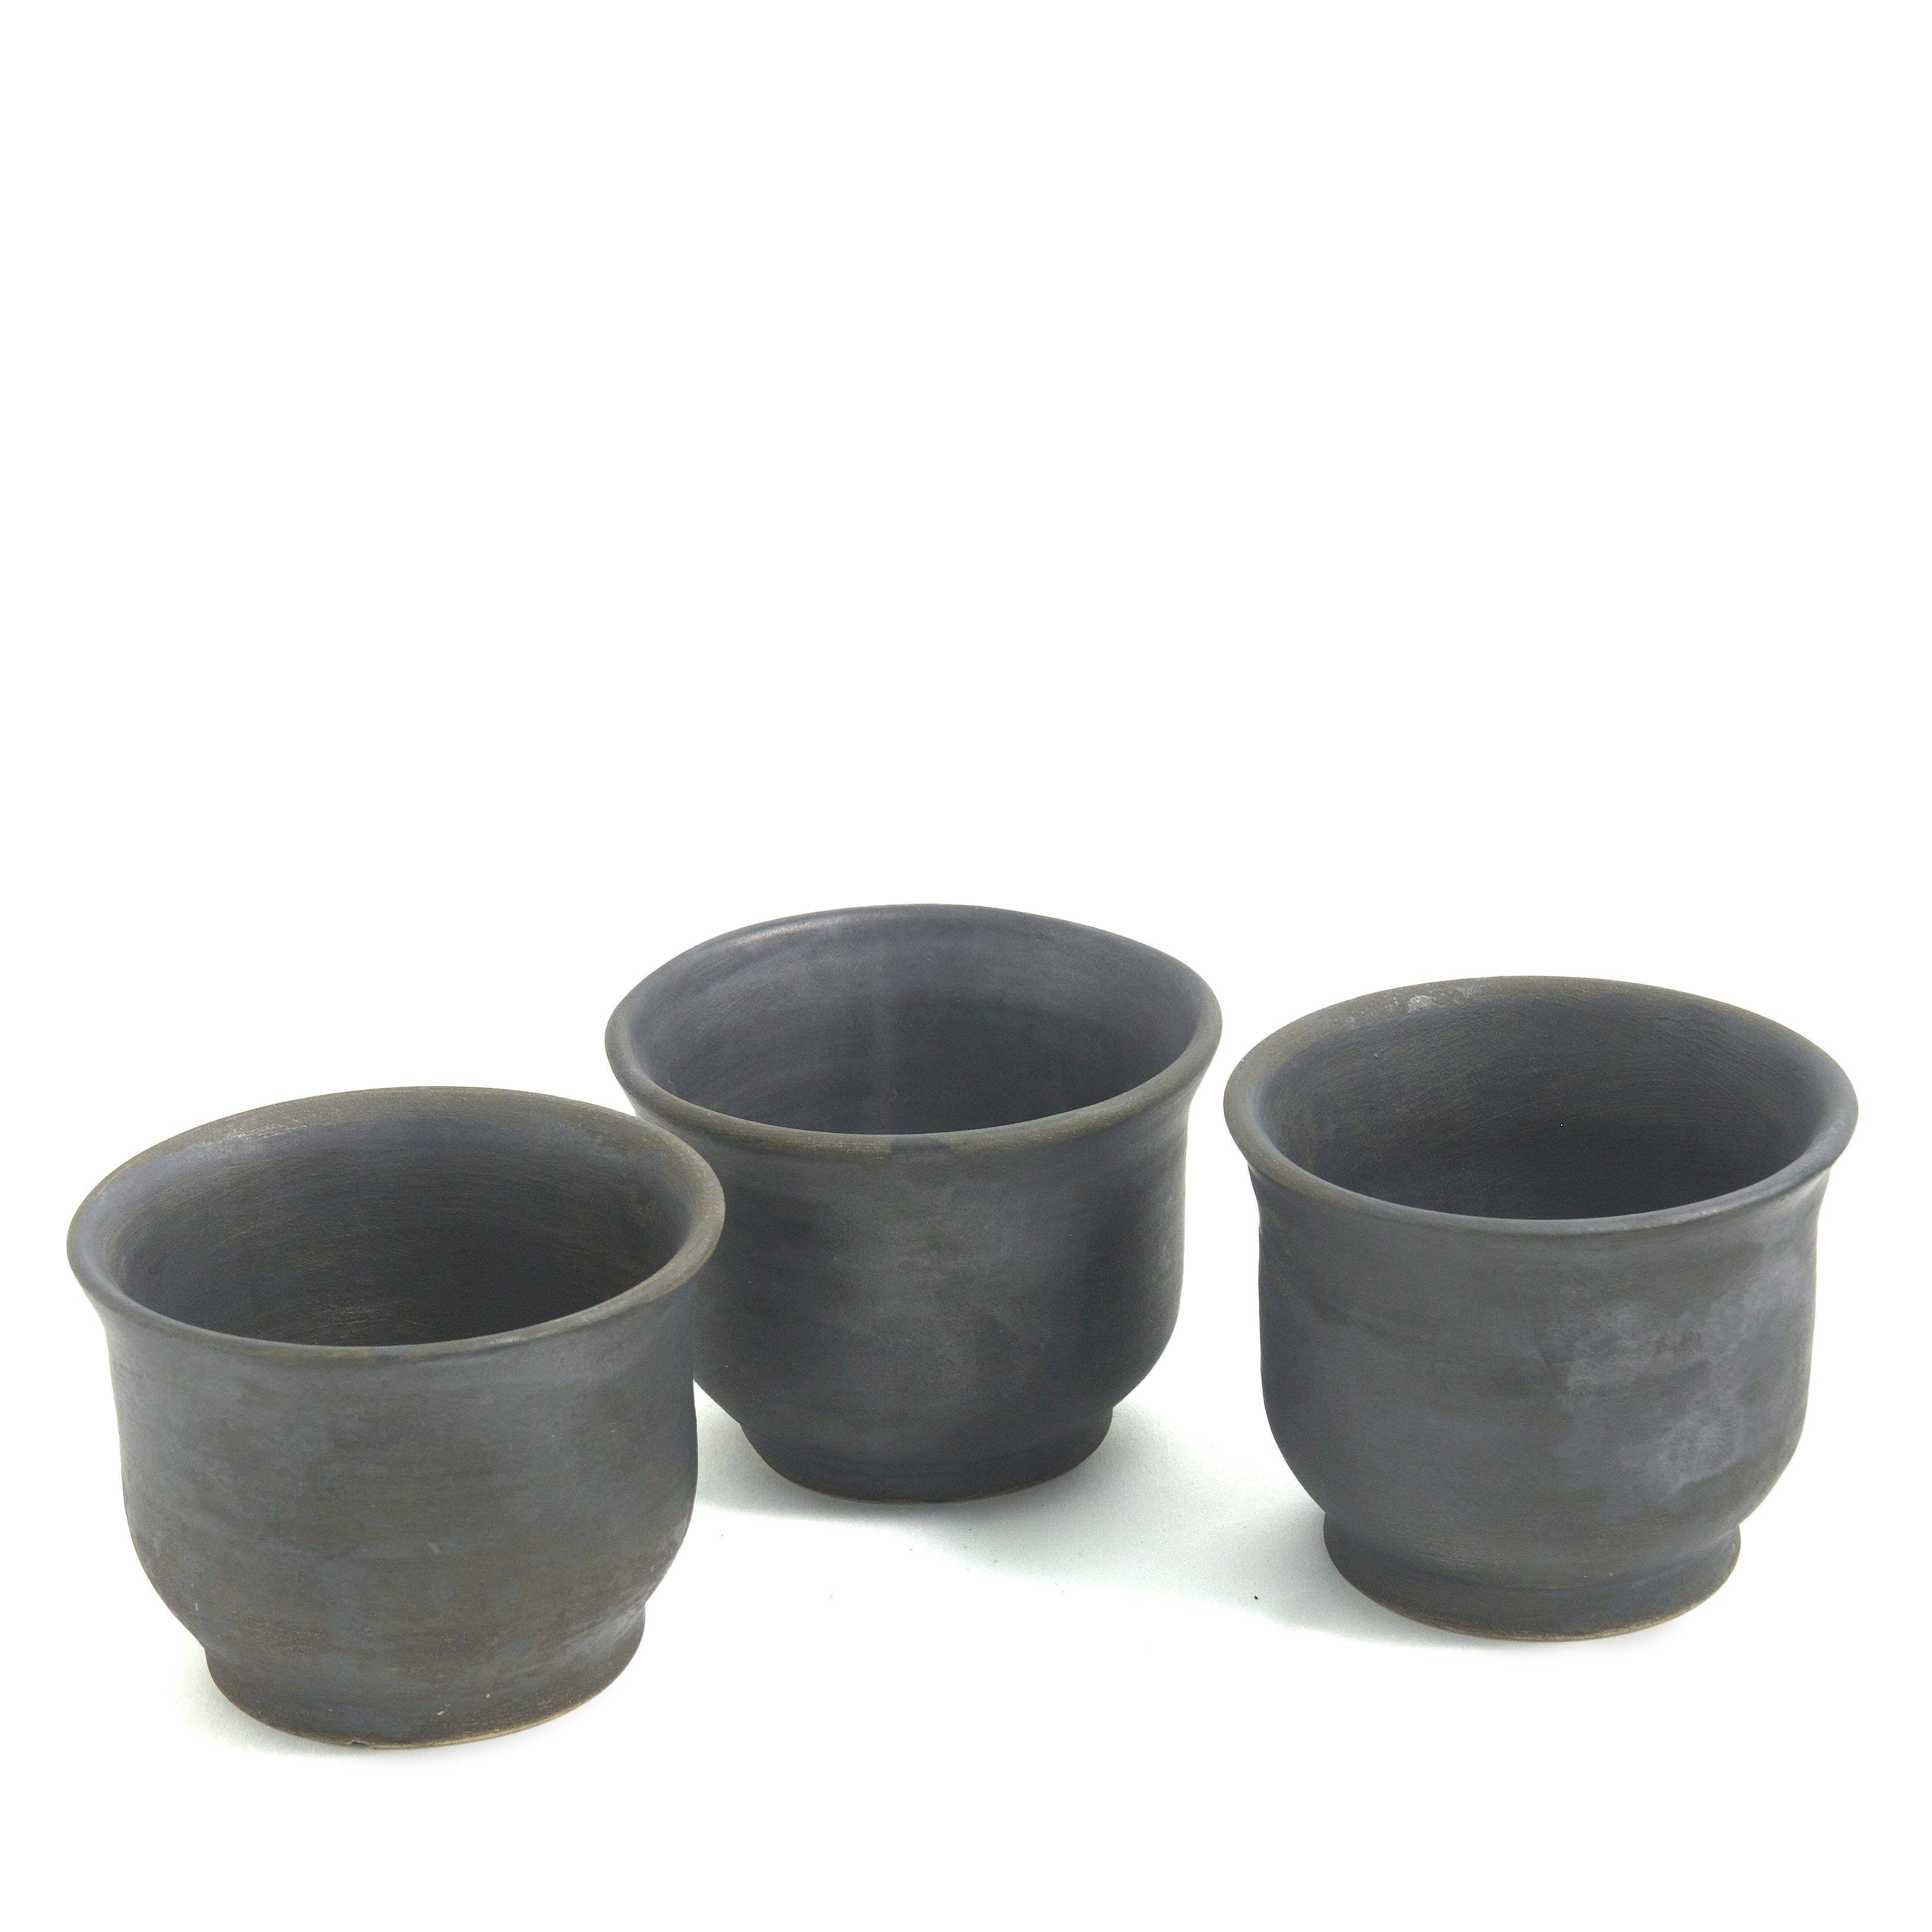 Terre 3 tasses

Ce lot de trois tasses en céramique noire mate, habilement fabriquées à la main sur un tour, constitue un ajout exclusif aux collections de vaisselle moderne, qu'il agrémente d'un soupçon de style oriental. Les pièces sont